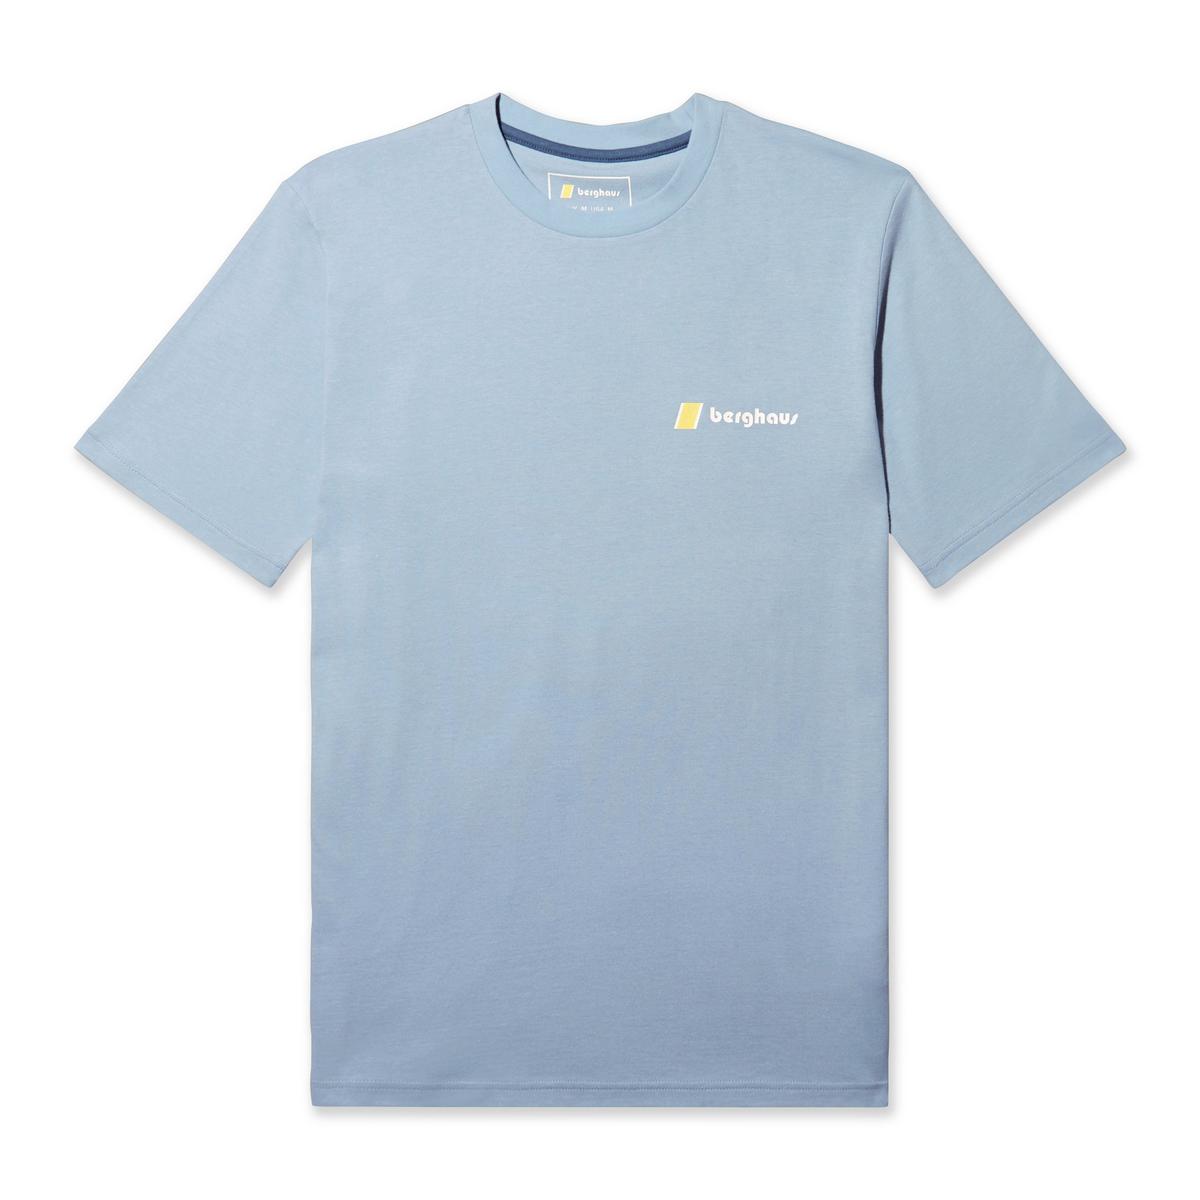 Berghaus Men's Natural Grit Short-Sleeve T-Shirt - Blue